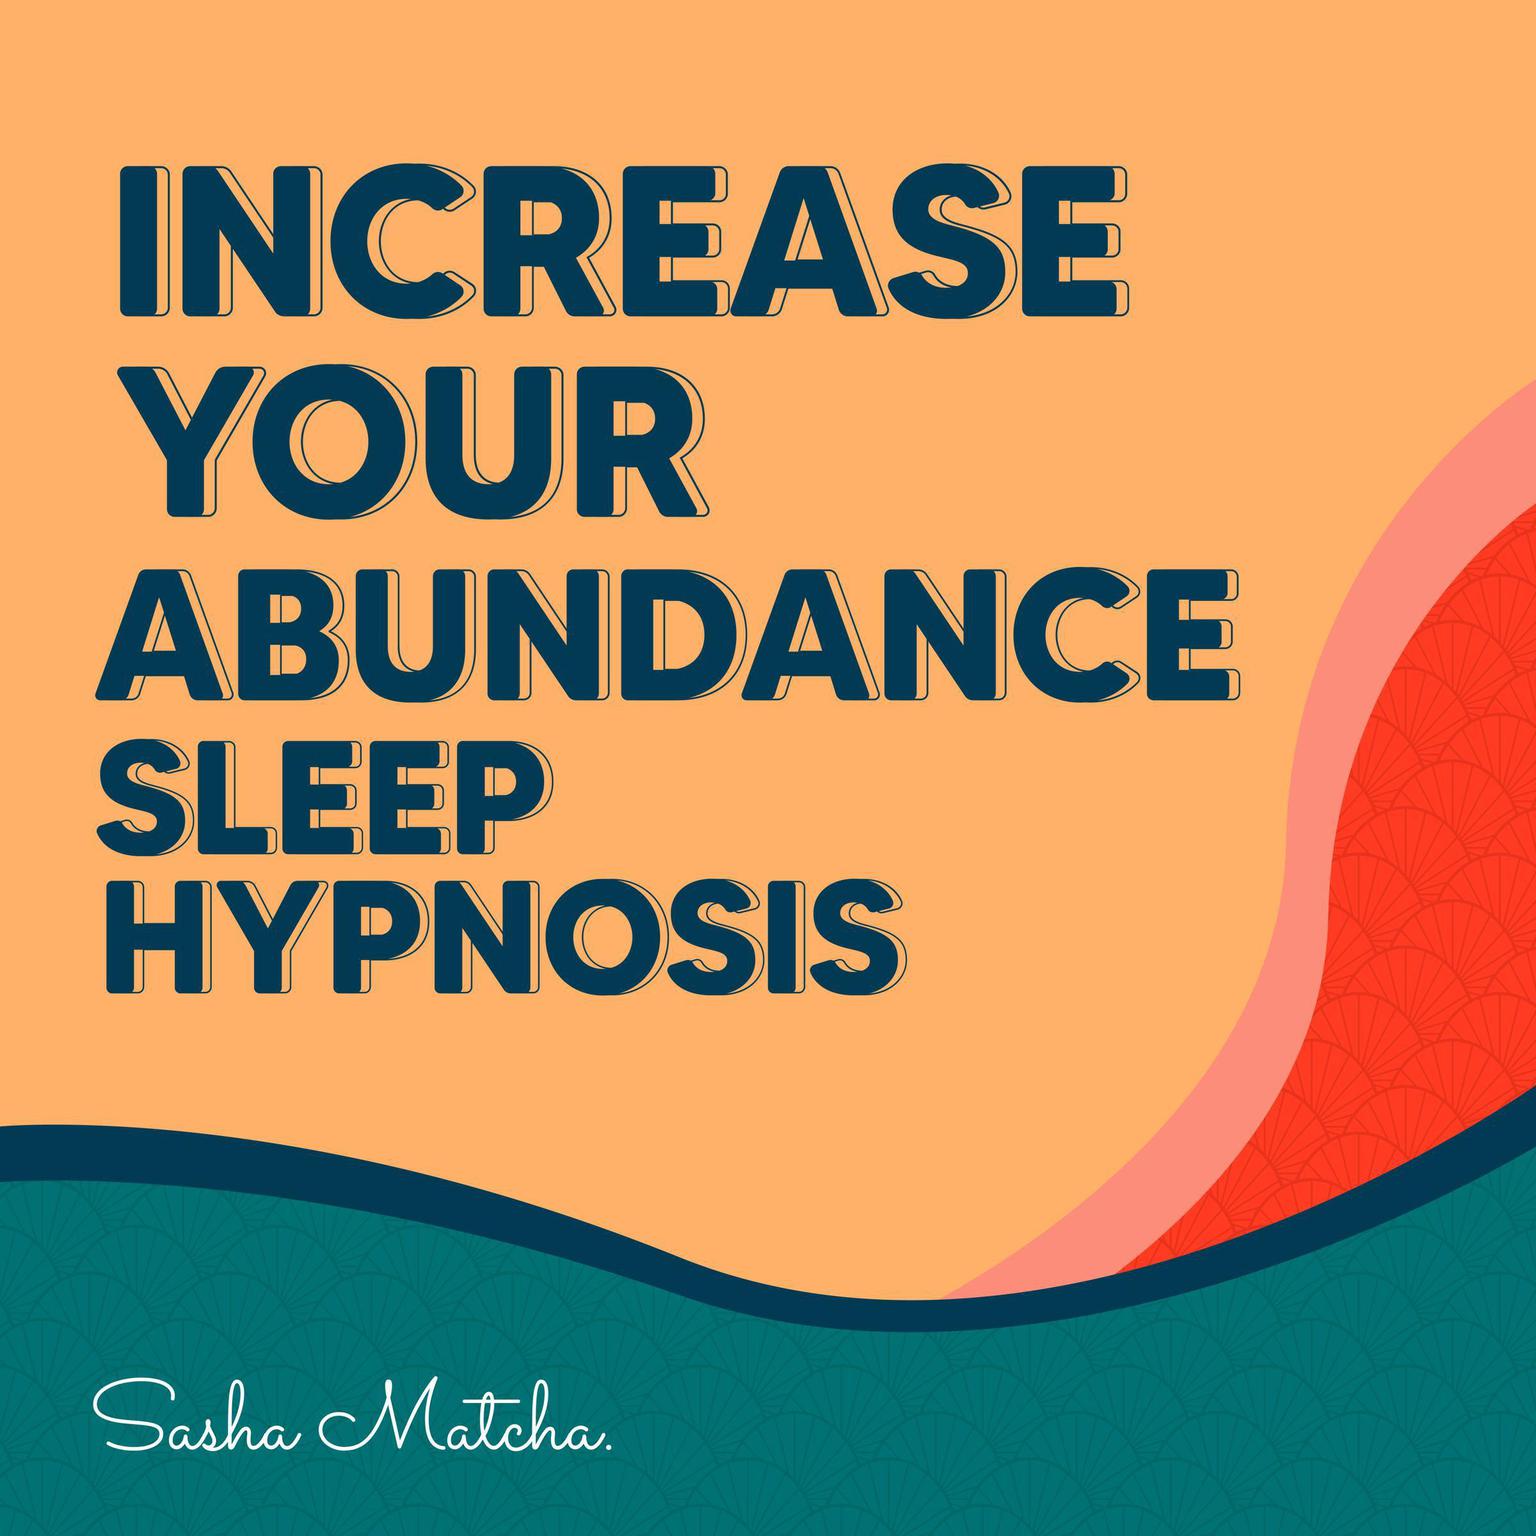 Increase Your Abundance Sleep Hypnosis Audiobook, by Sasha Matcha